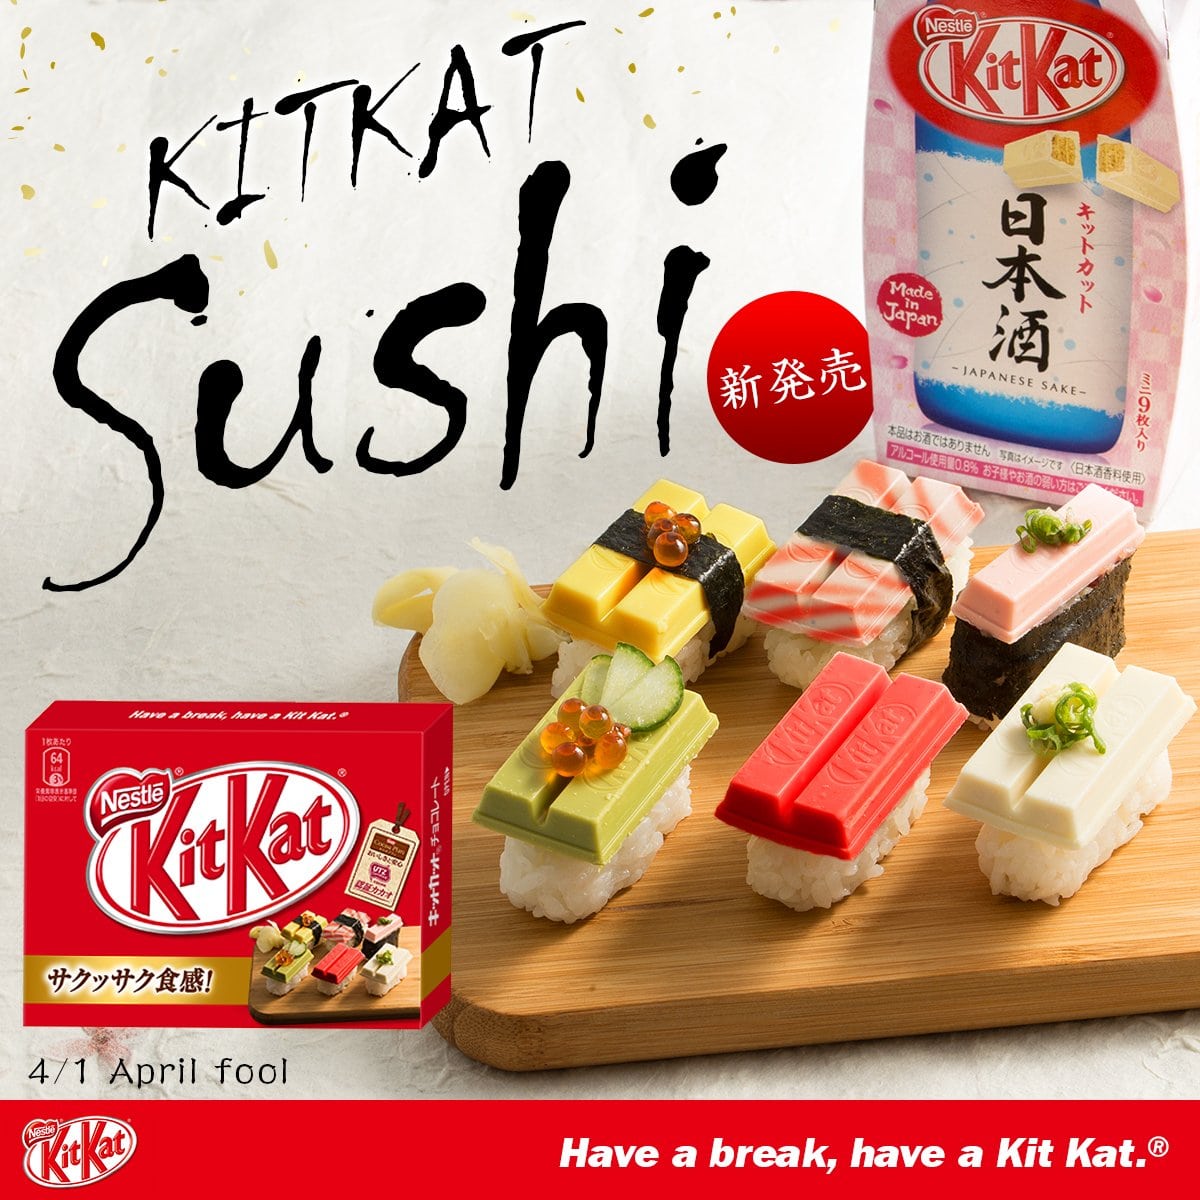 Weirdest Japanese Food 13 - kit kat sushi ad